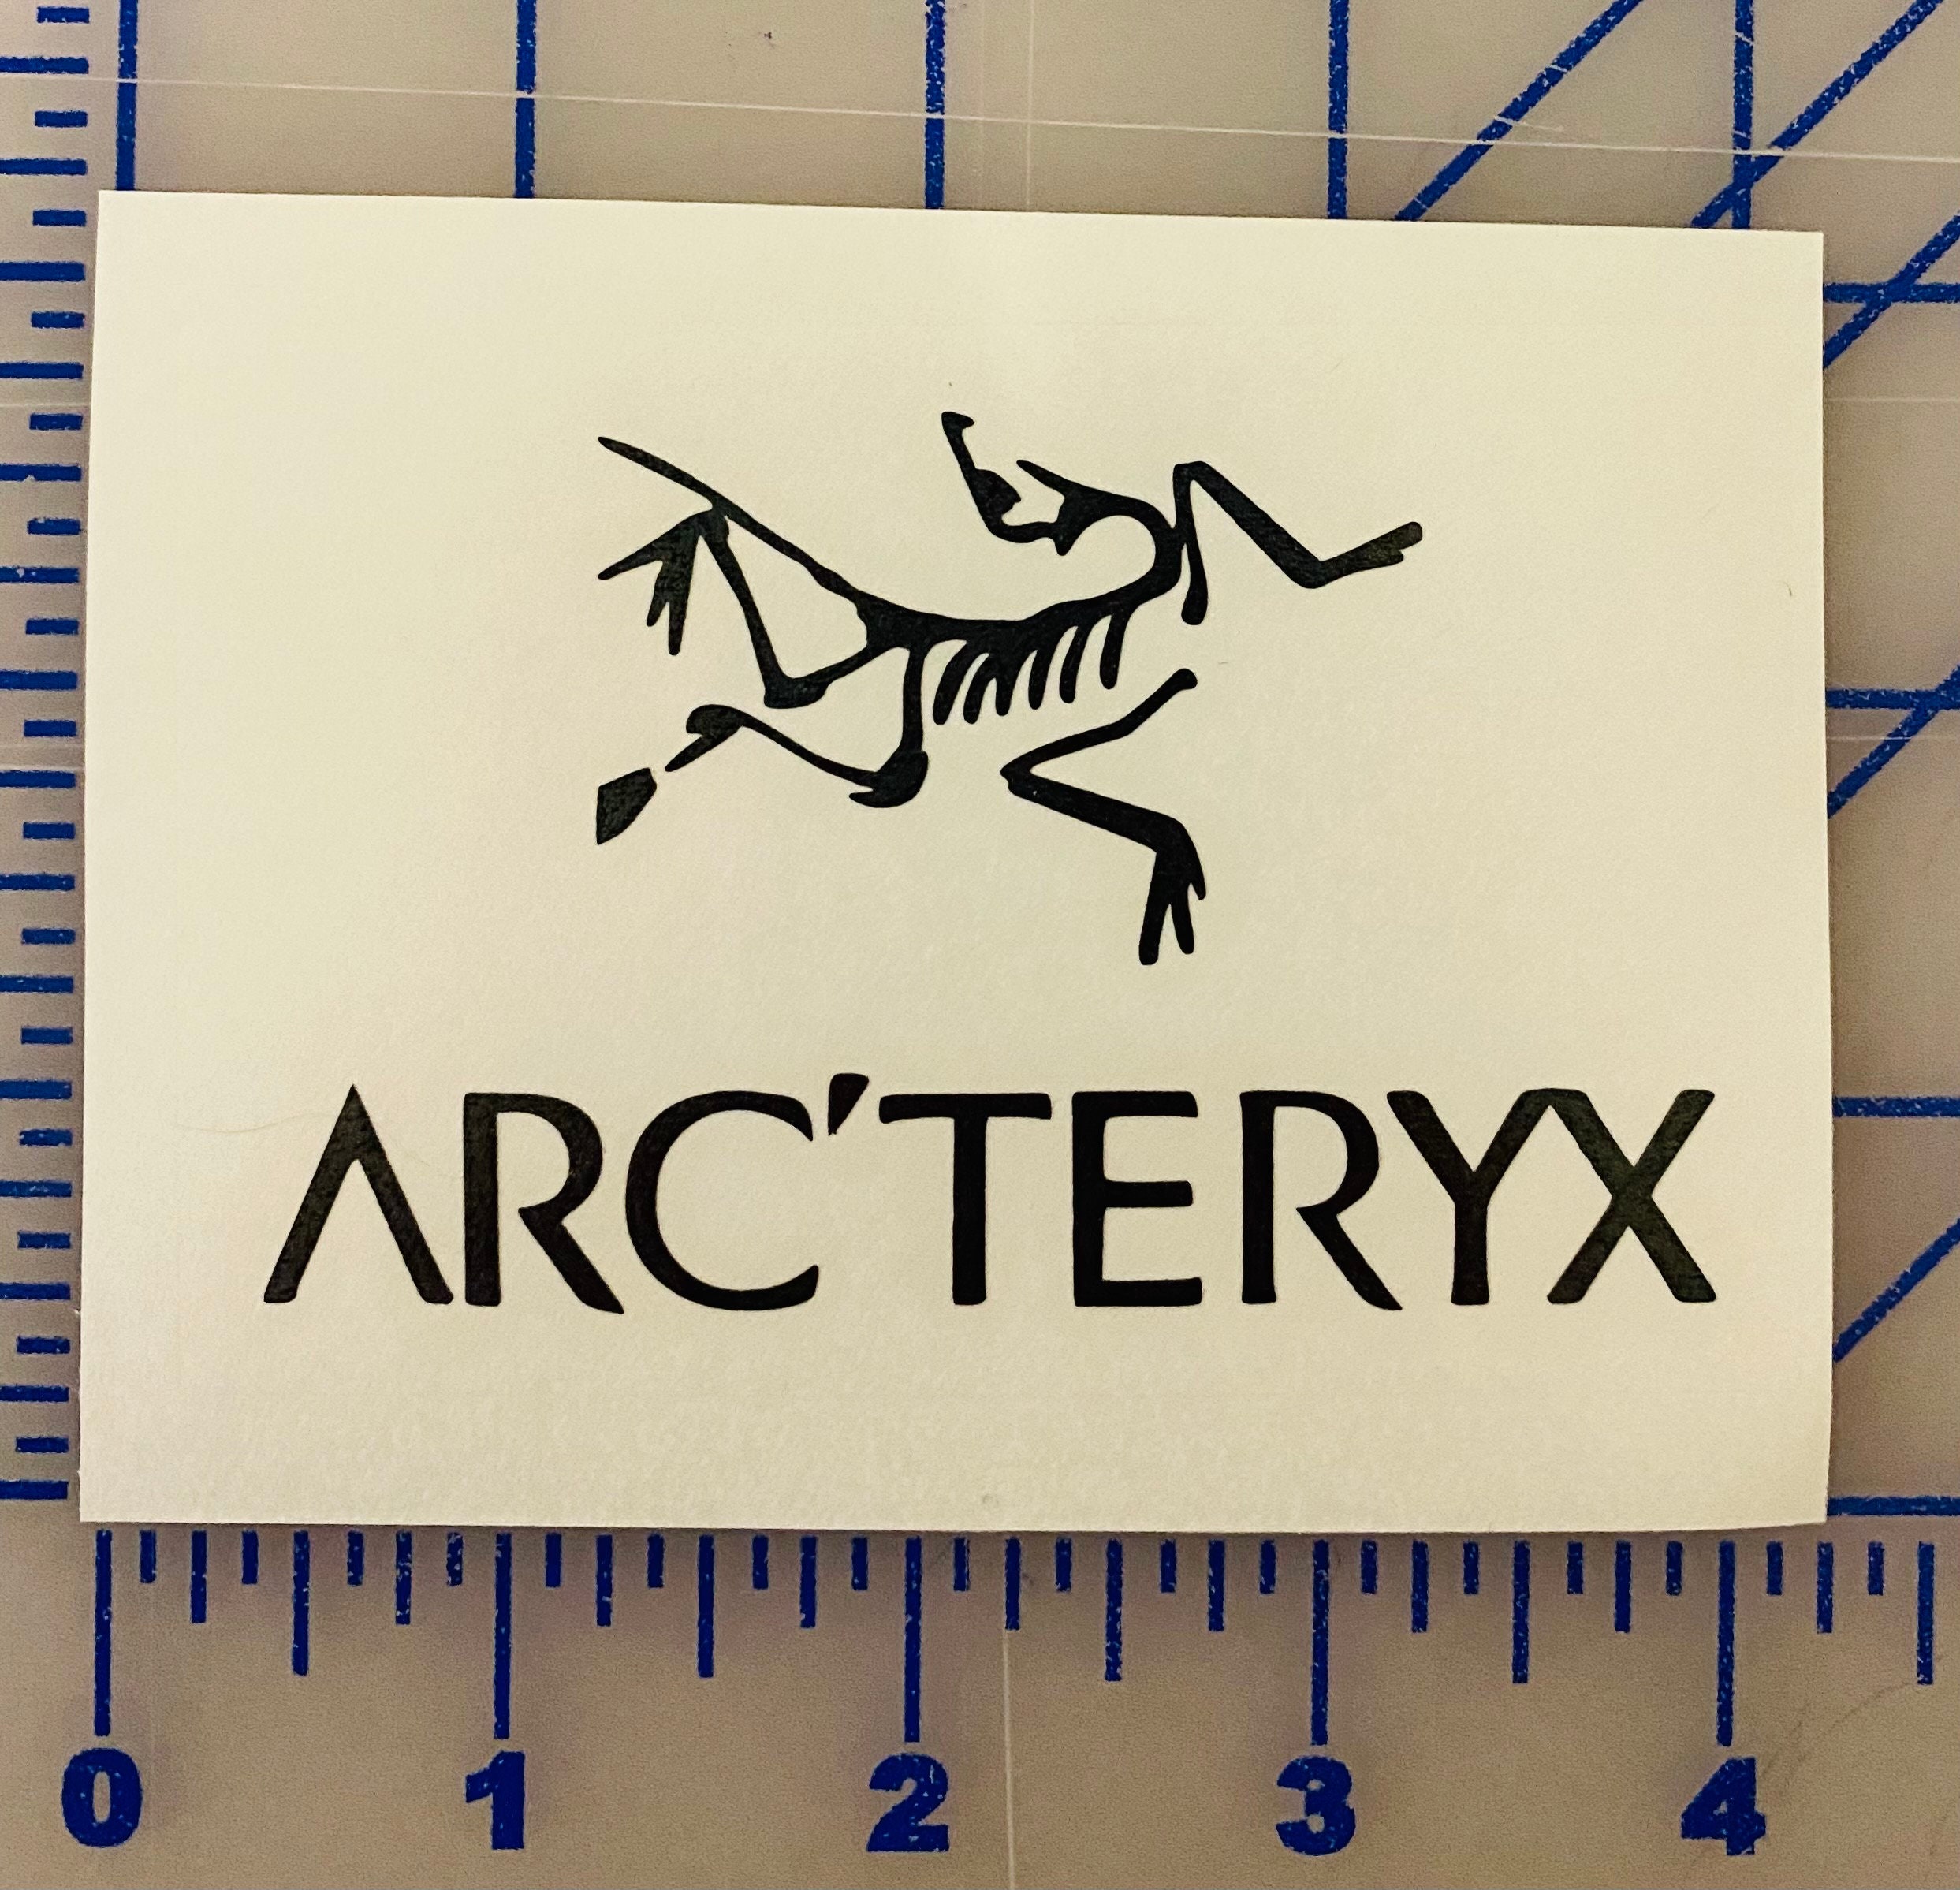 Arc'teryx Arcteryx Logo Reflective Vinyl Sticker Decal 15cm x 8.2 cm 